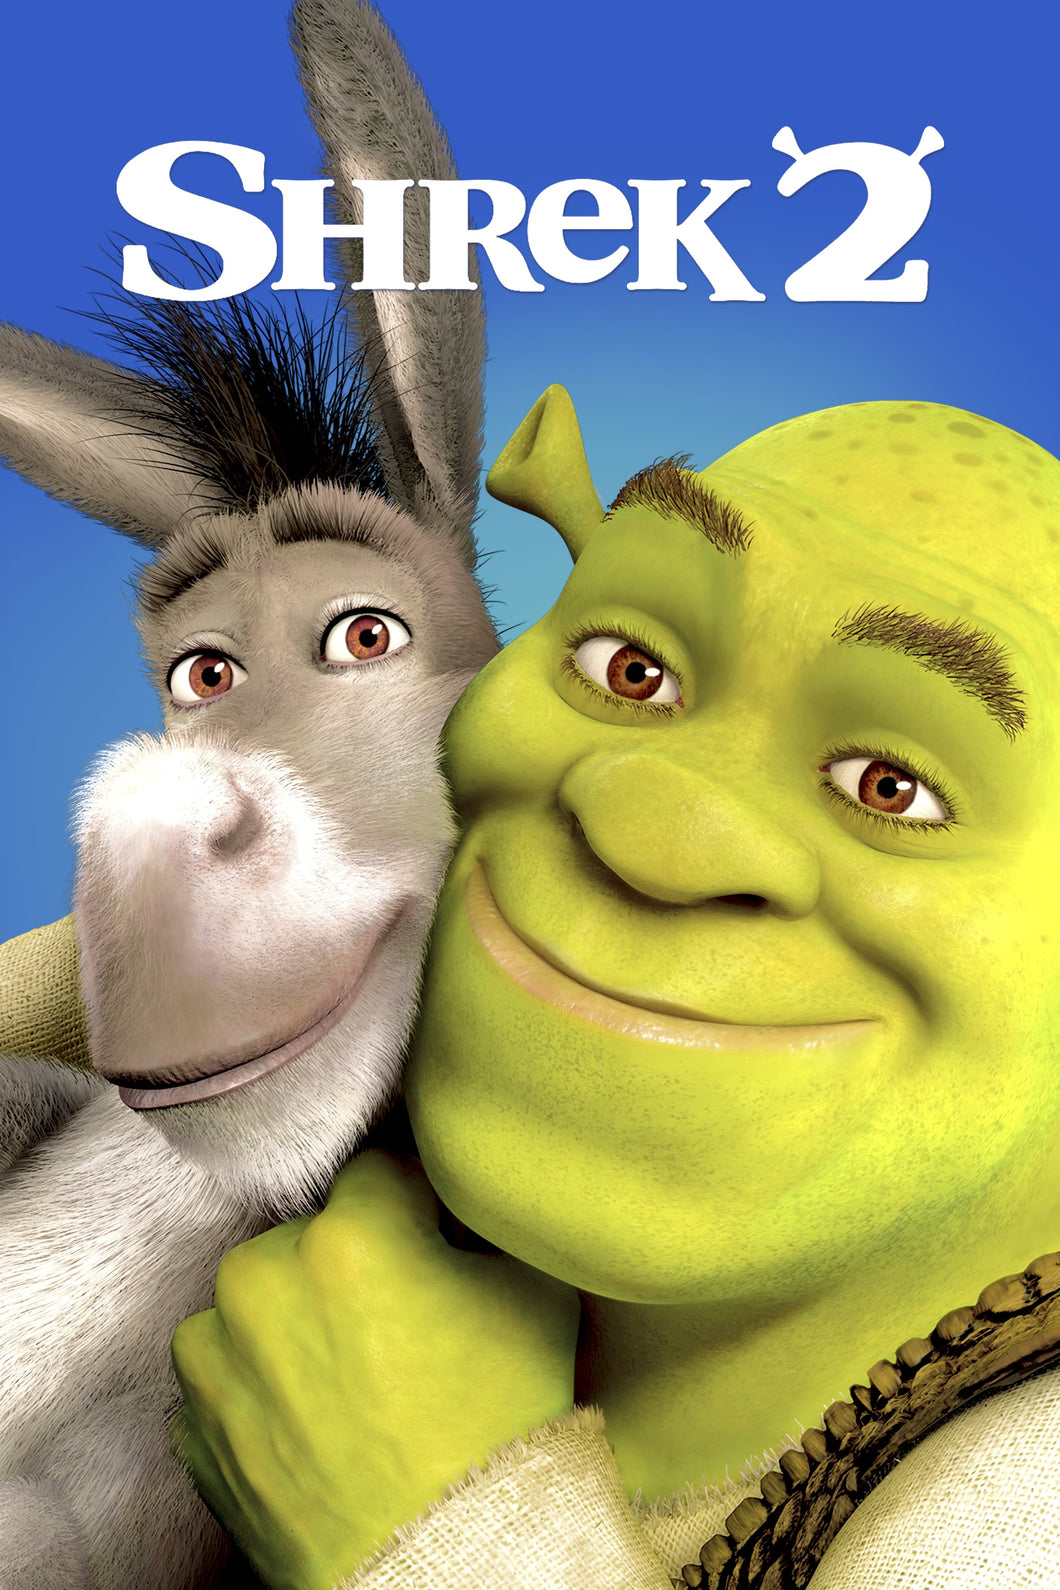 Shrek 2 (2004) Animated Movie Poster Framed or Unframed Glossy Poster Free UK Shipping!!!